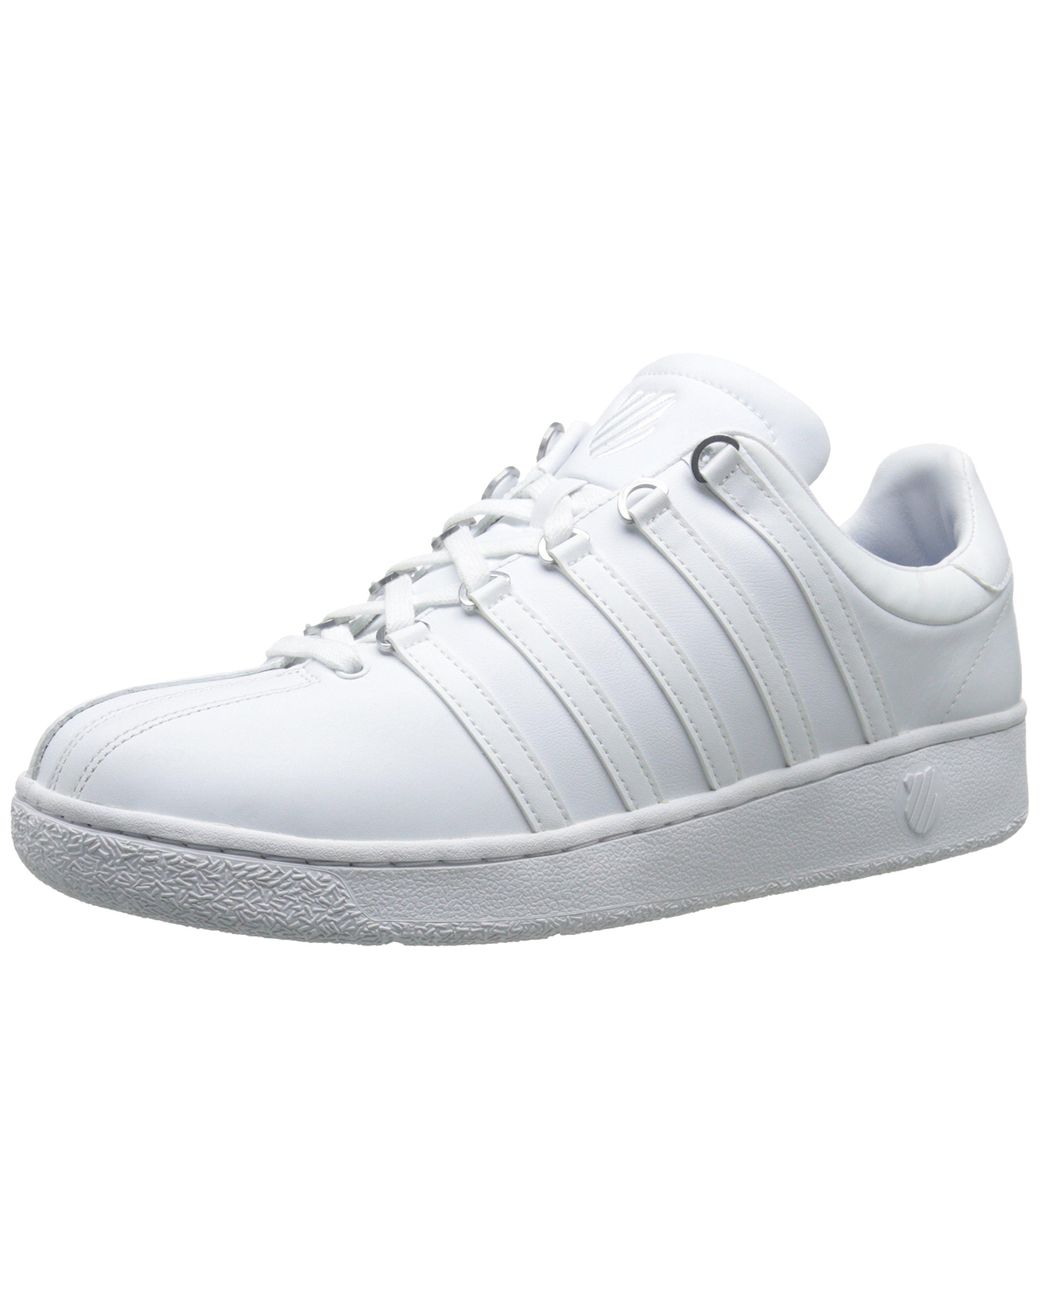 K-swiss Classic Vn Sneaker in White/White (White) for Men - Lyst